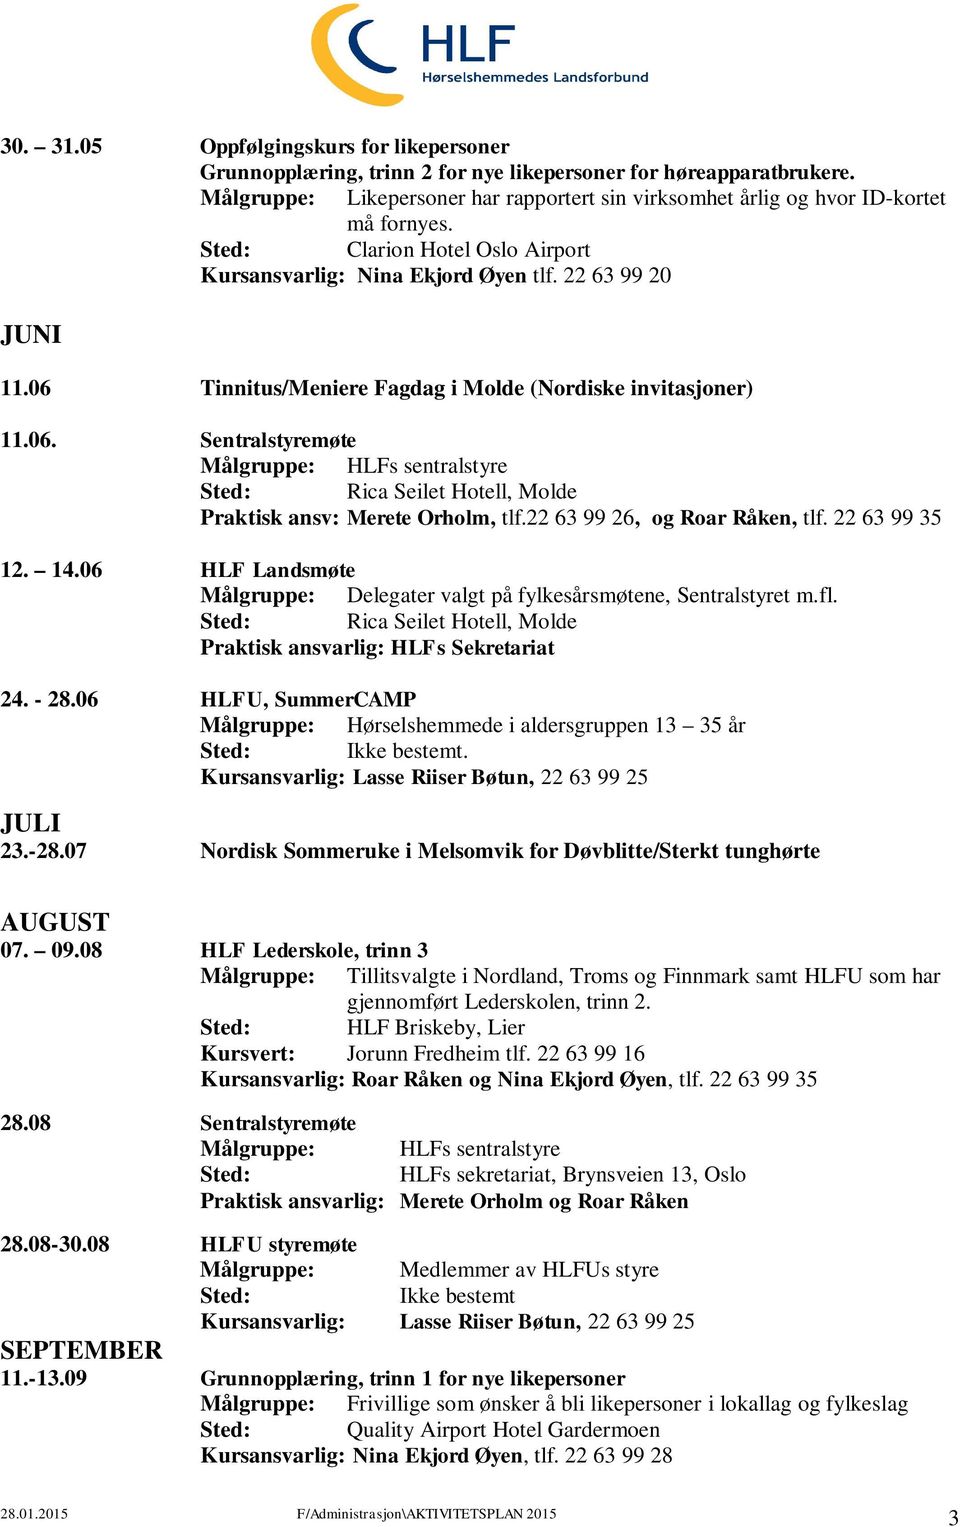 06 HLF Landsmøte Målgruppe: Delegater valgt på fylkesårsmøtene, Sentralstyret m.fl. Sted: Rica Seilet Hotell, Molde Praktisk ansvarlig: HLFs Sekretariat 24. - 28.